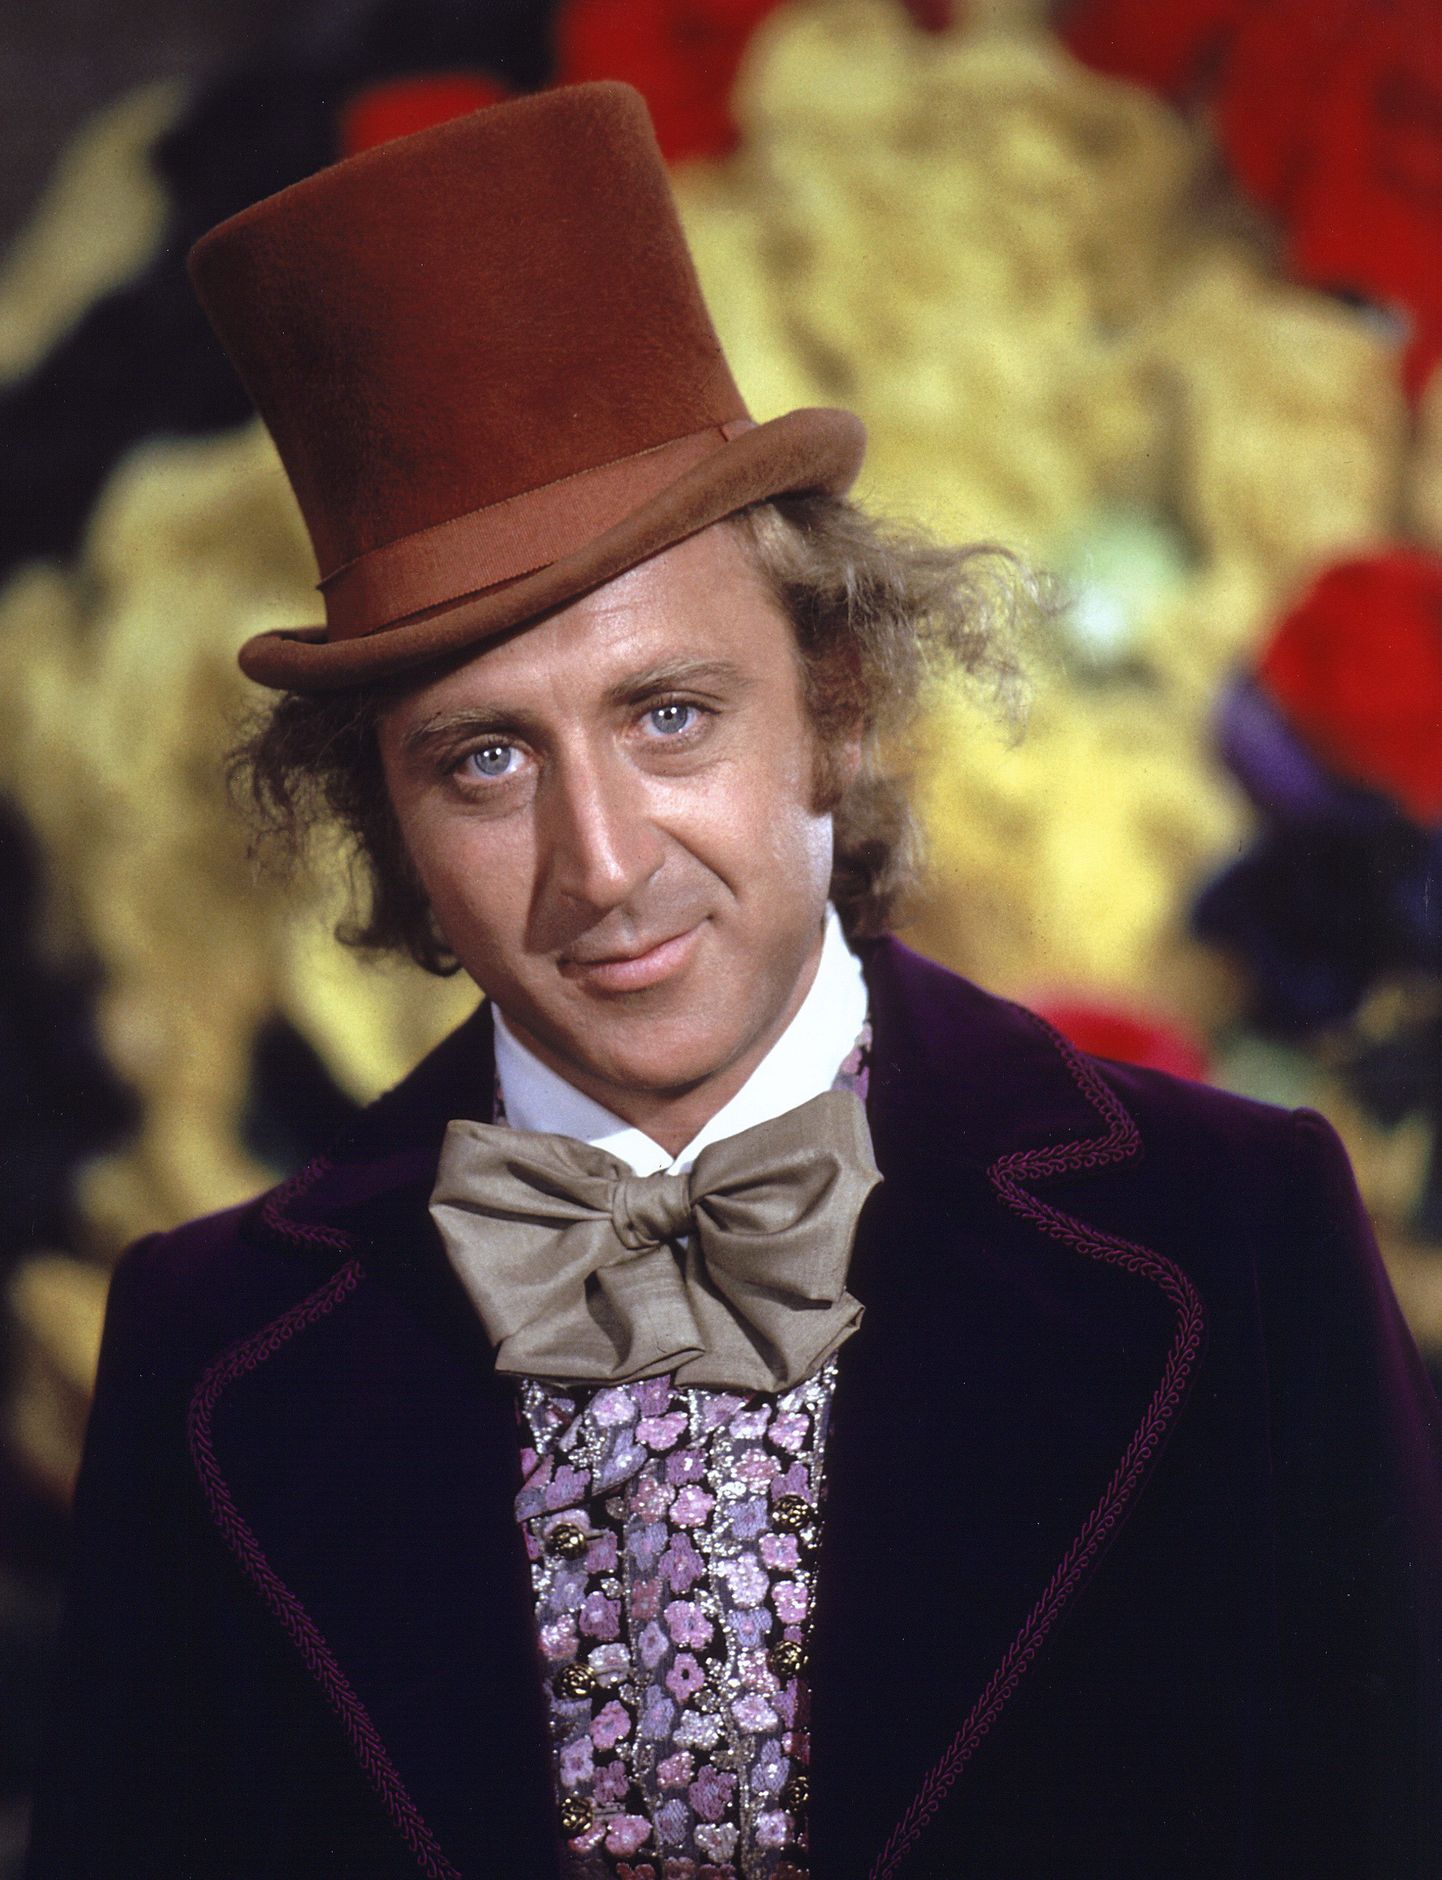 Gene Wilder "Willy Wonka & the Chocolate Factory" 1971